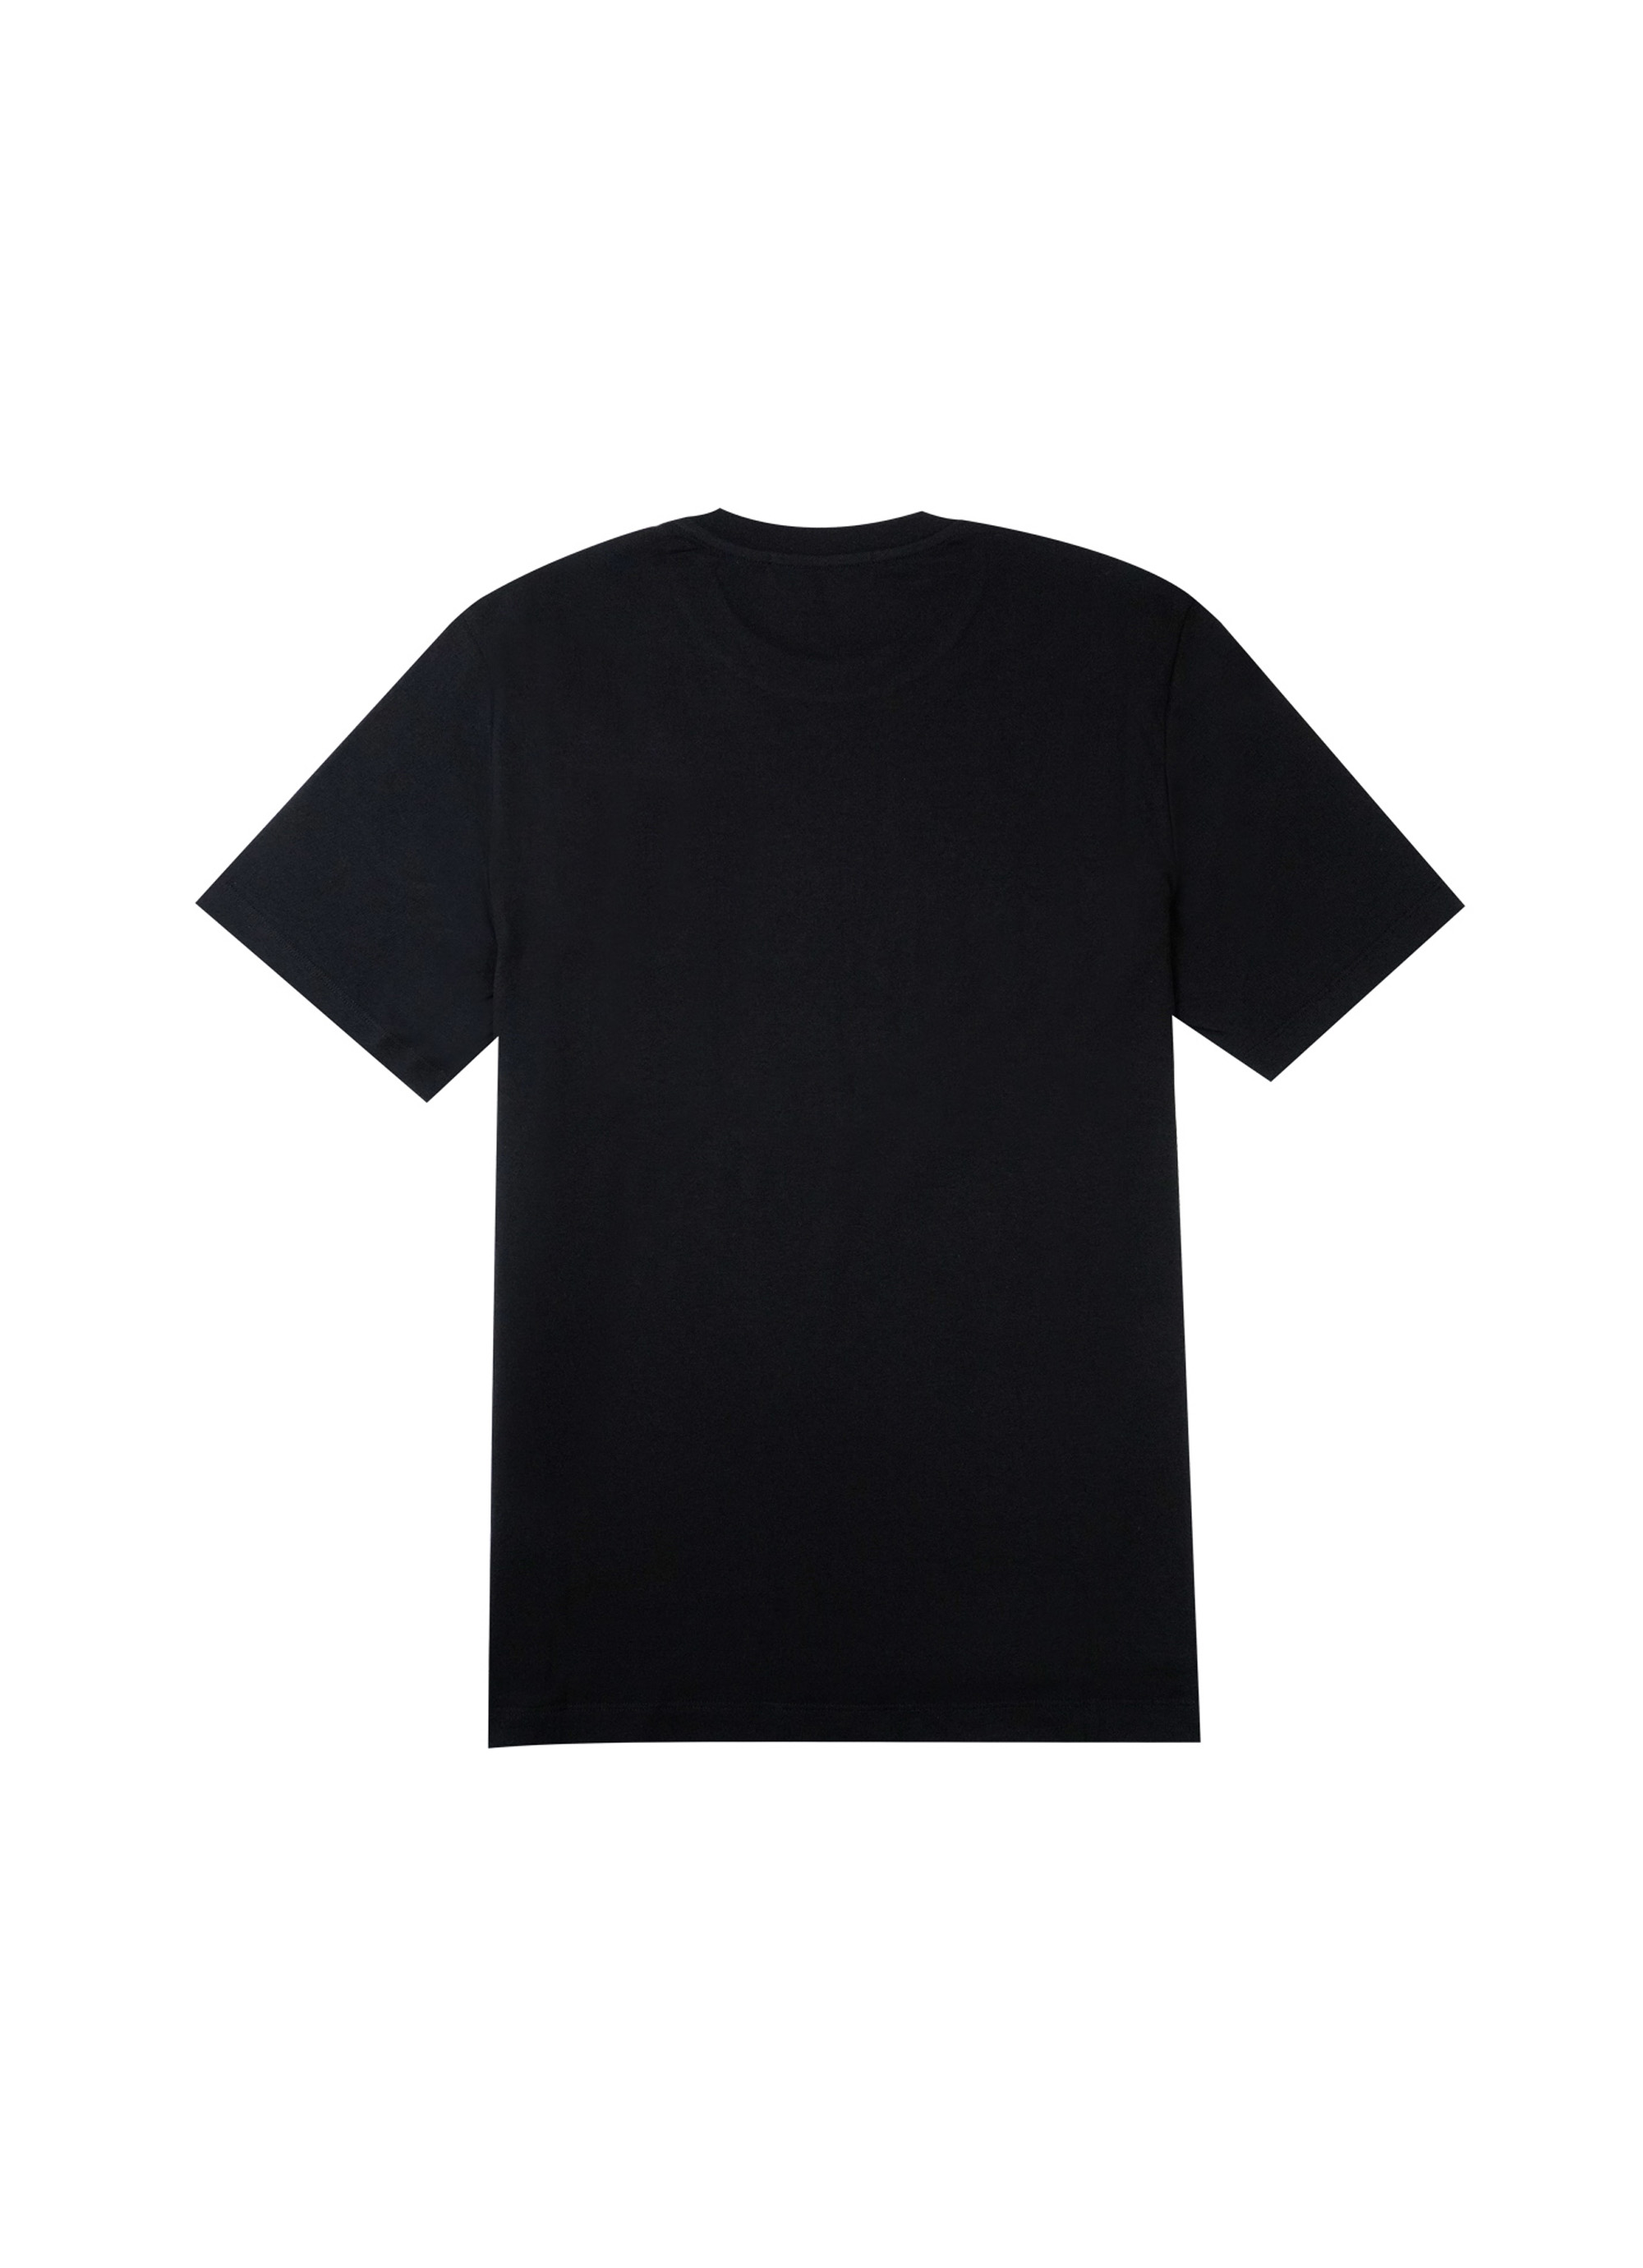 【NEW】ブラッシュロゴTシャツ 詳細画像 ブラック 2